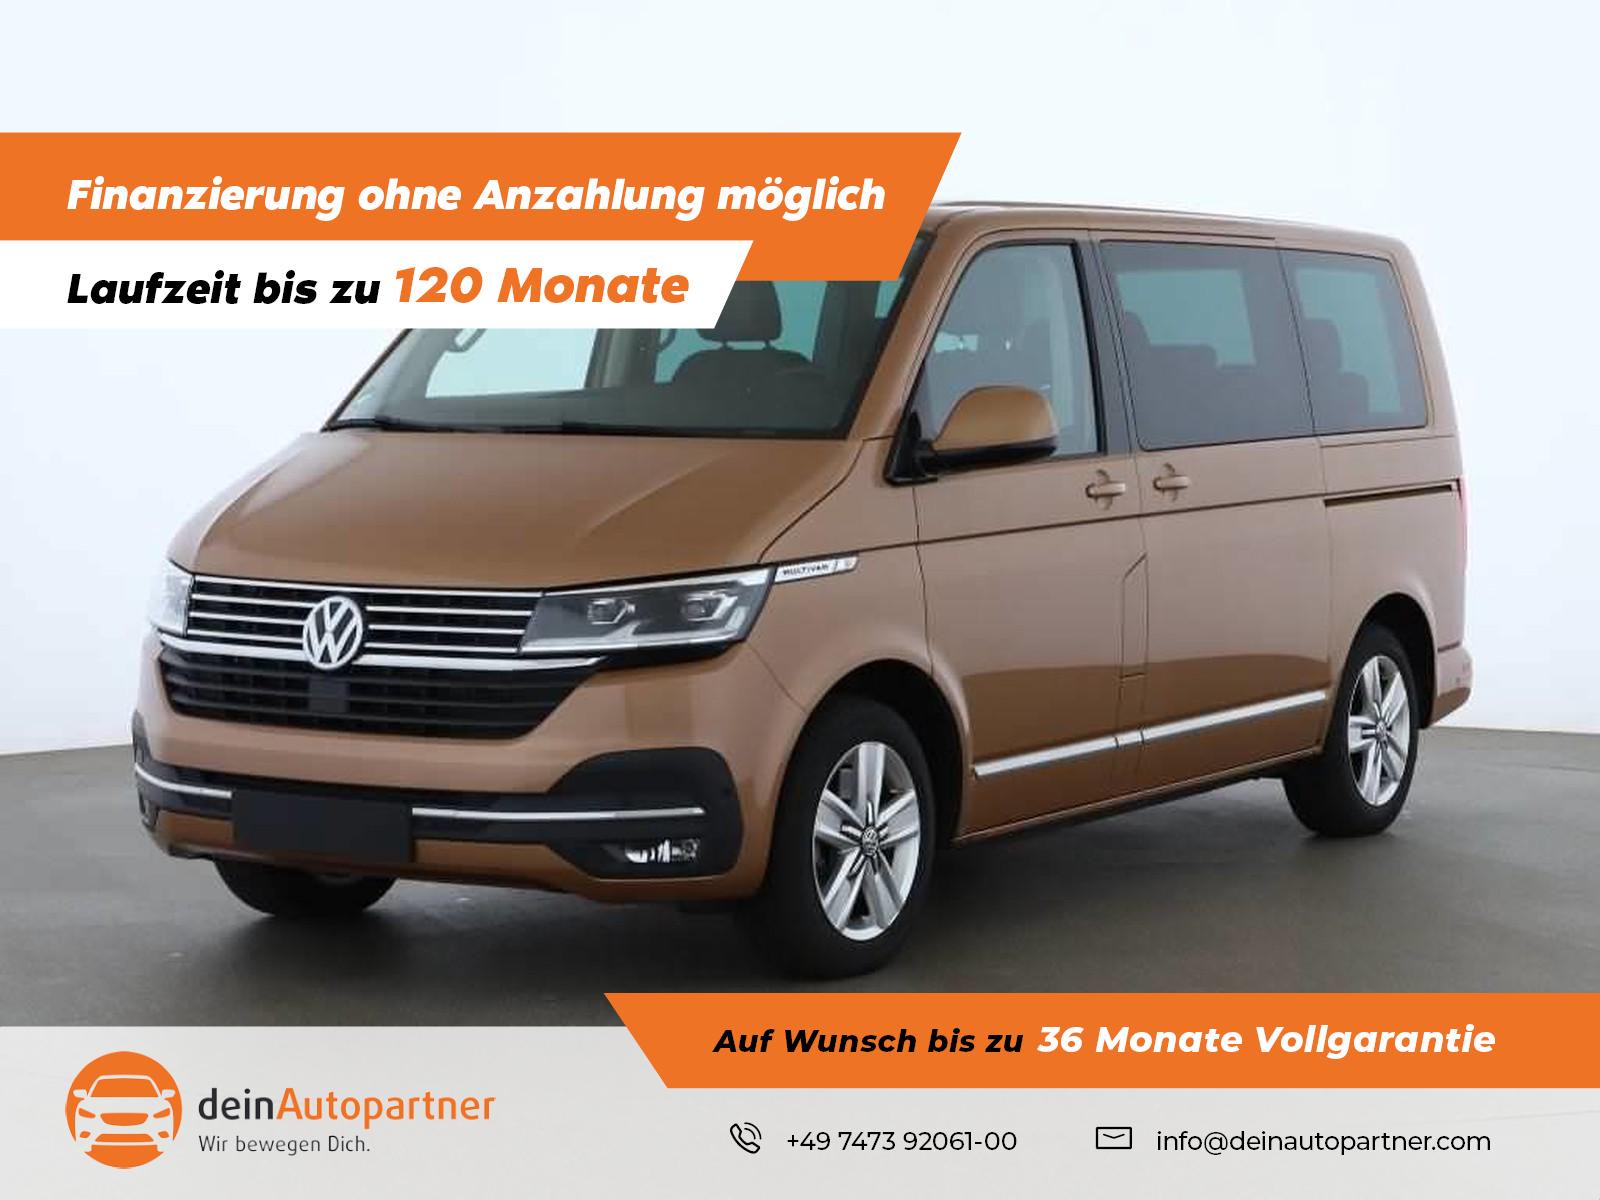 Volkswagen T6.1 Multivan gebraucht kaufen in Mössingen Preis 57690 eur -  Int.Nr.: 1237